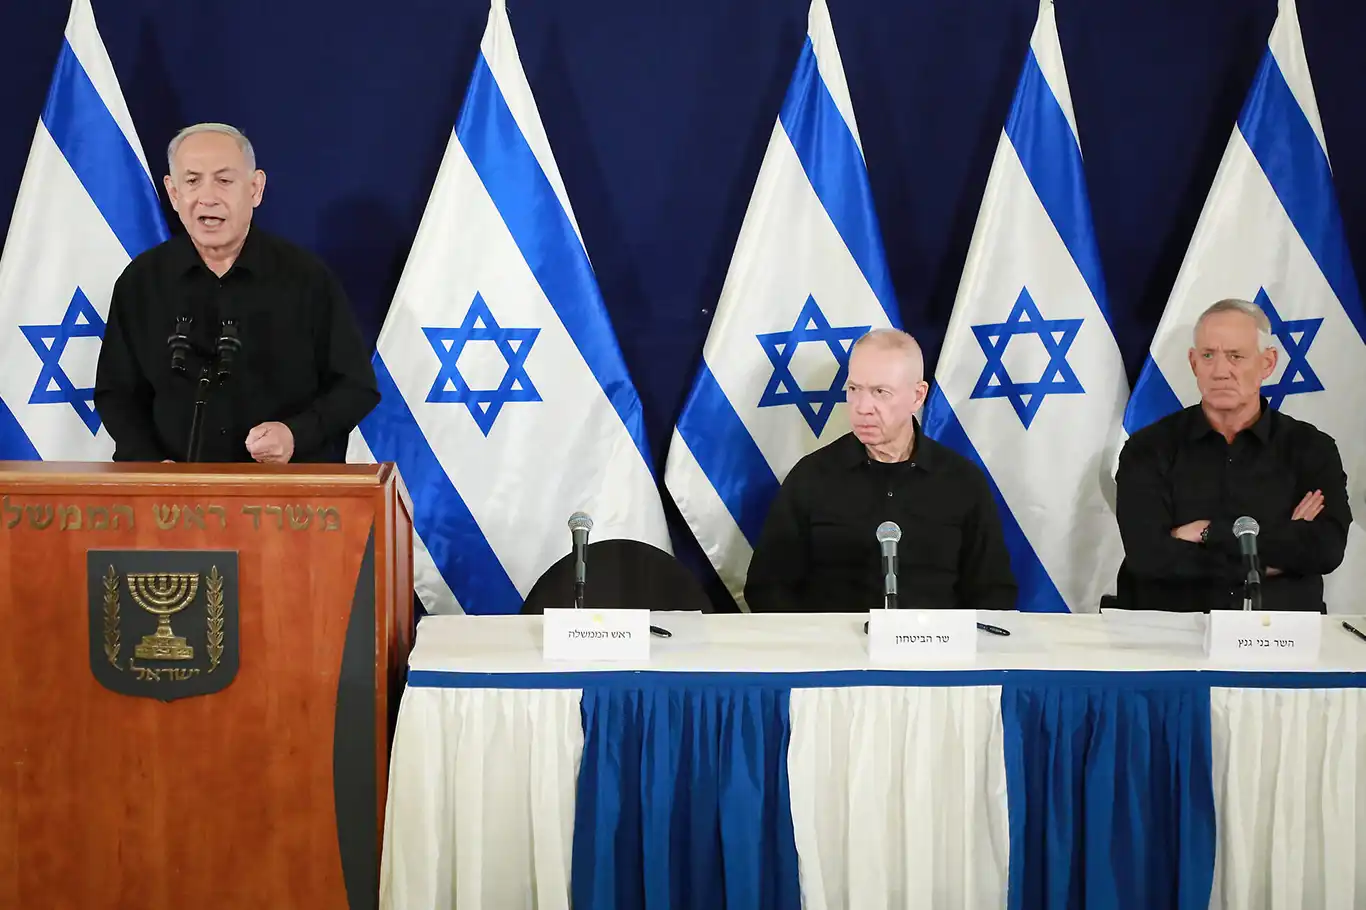 Netanyahu'dan Arap liderlere tehdit: Çıkarlarınızı ve iktidarınızı korumak için sessiz kalın